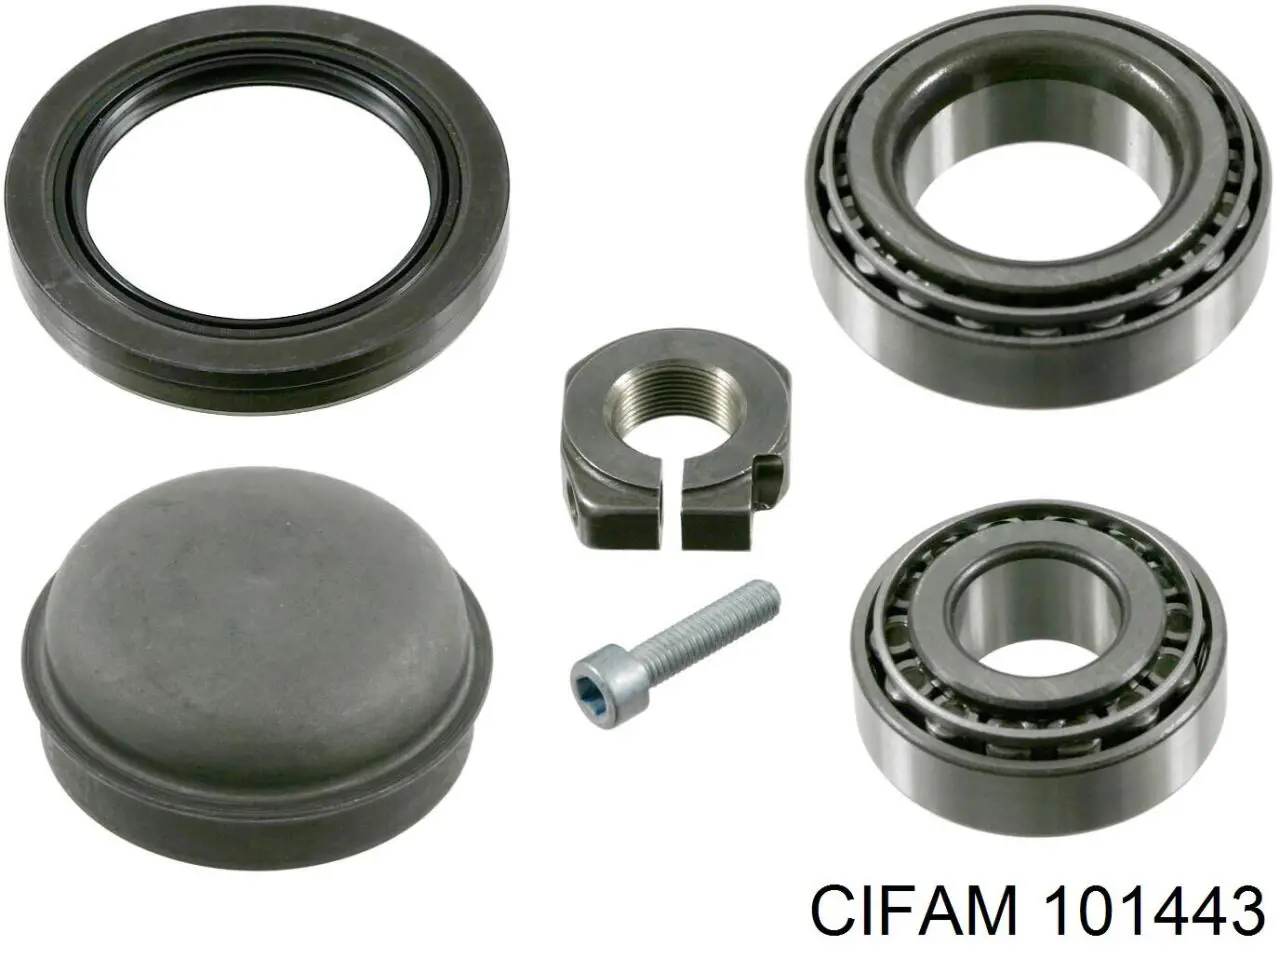 101443 Cifam cilindro de freno de rueda trasero